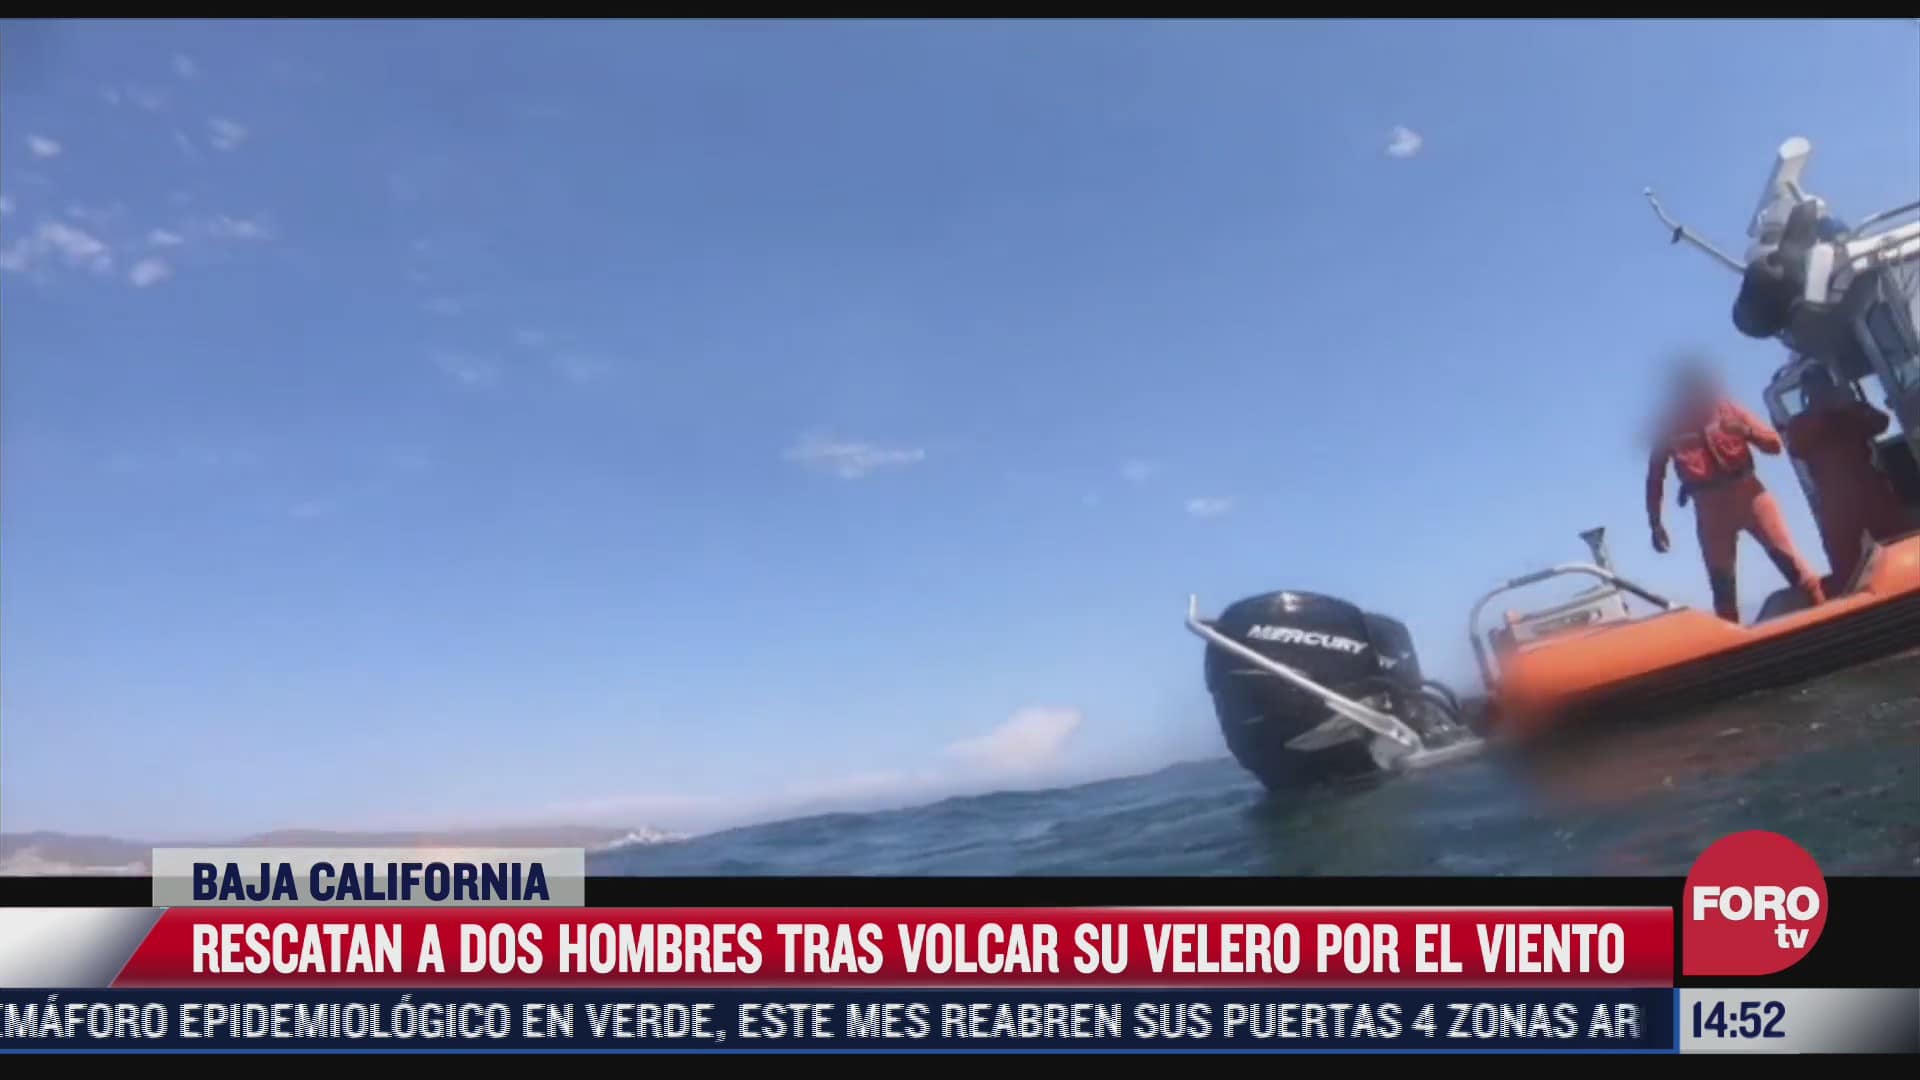 rescatan a dos hombres tras volcar su velero por el viento en baja california